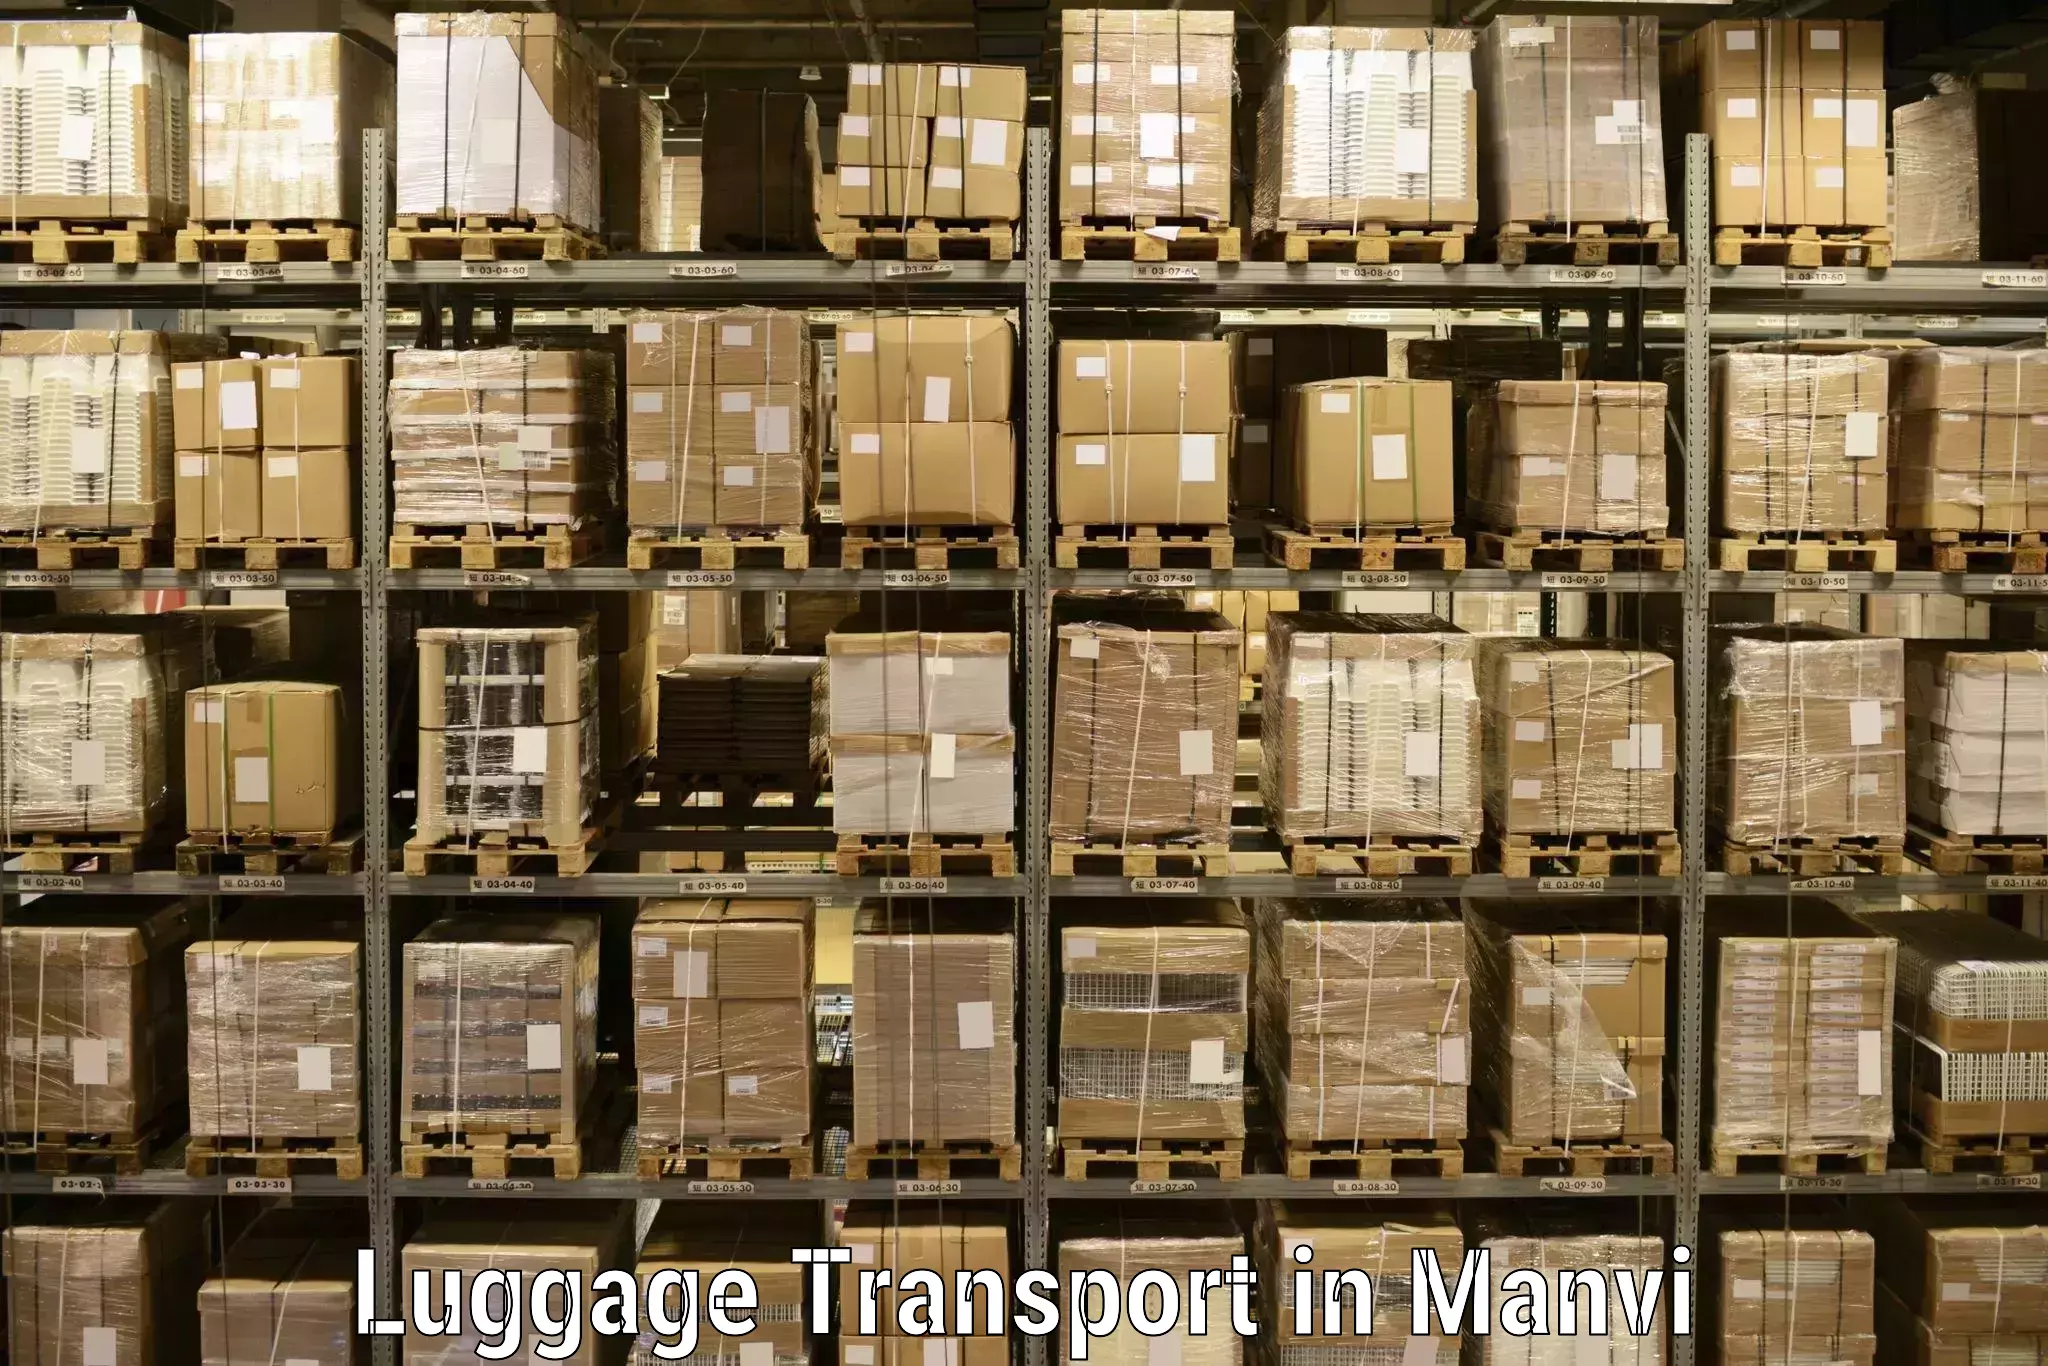 Baggage transport estimate in Manvi